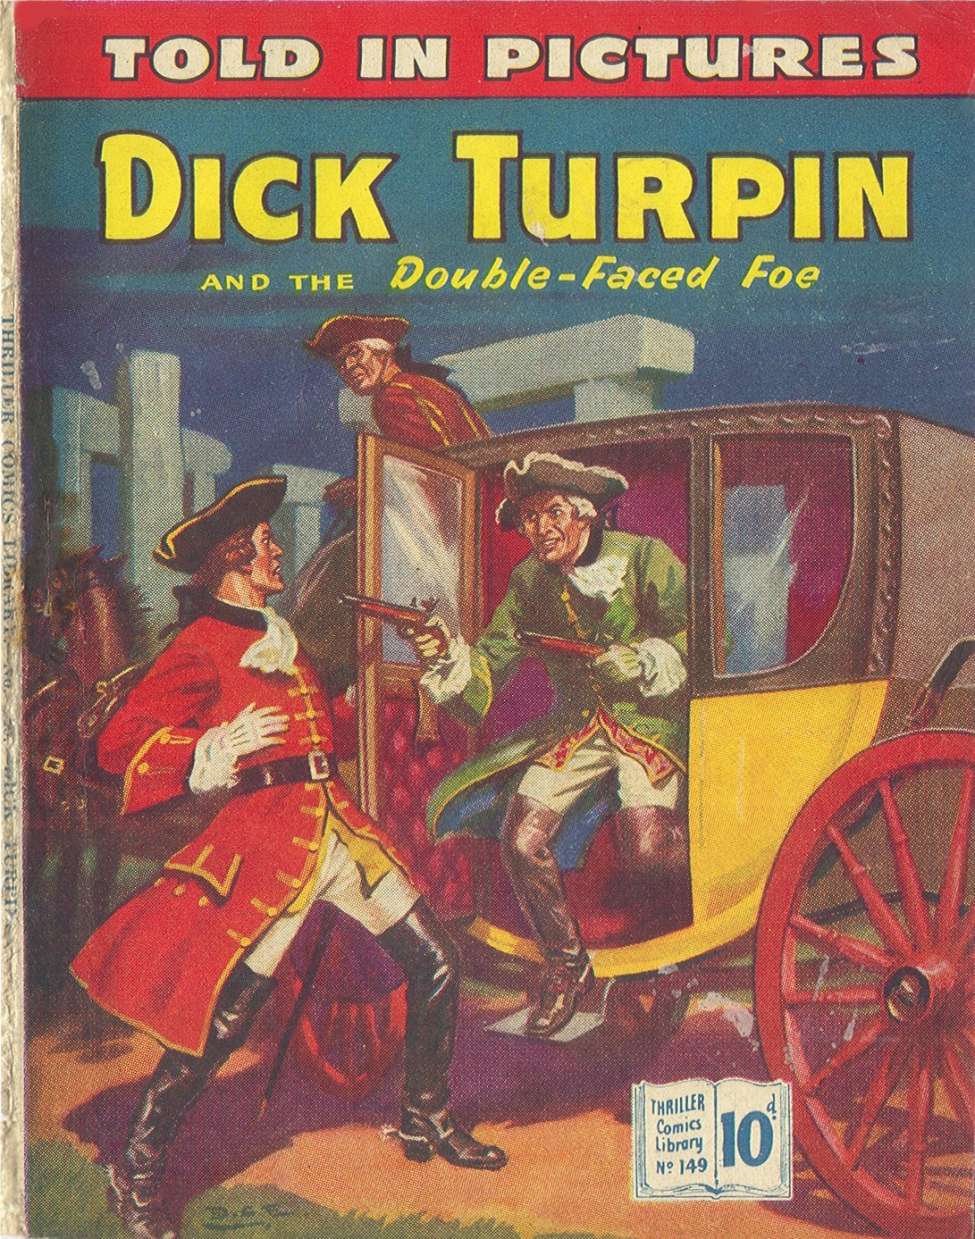 Dick turpin rides again york